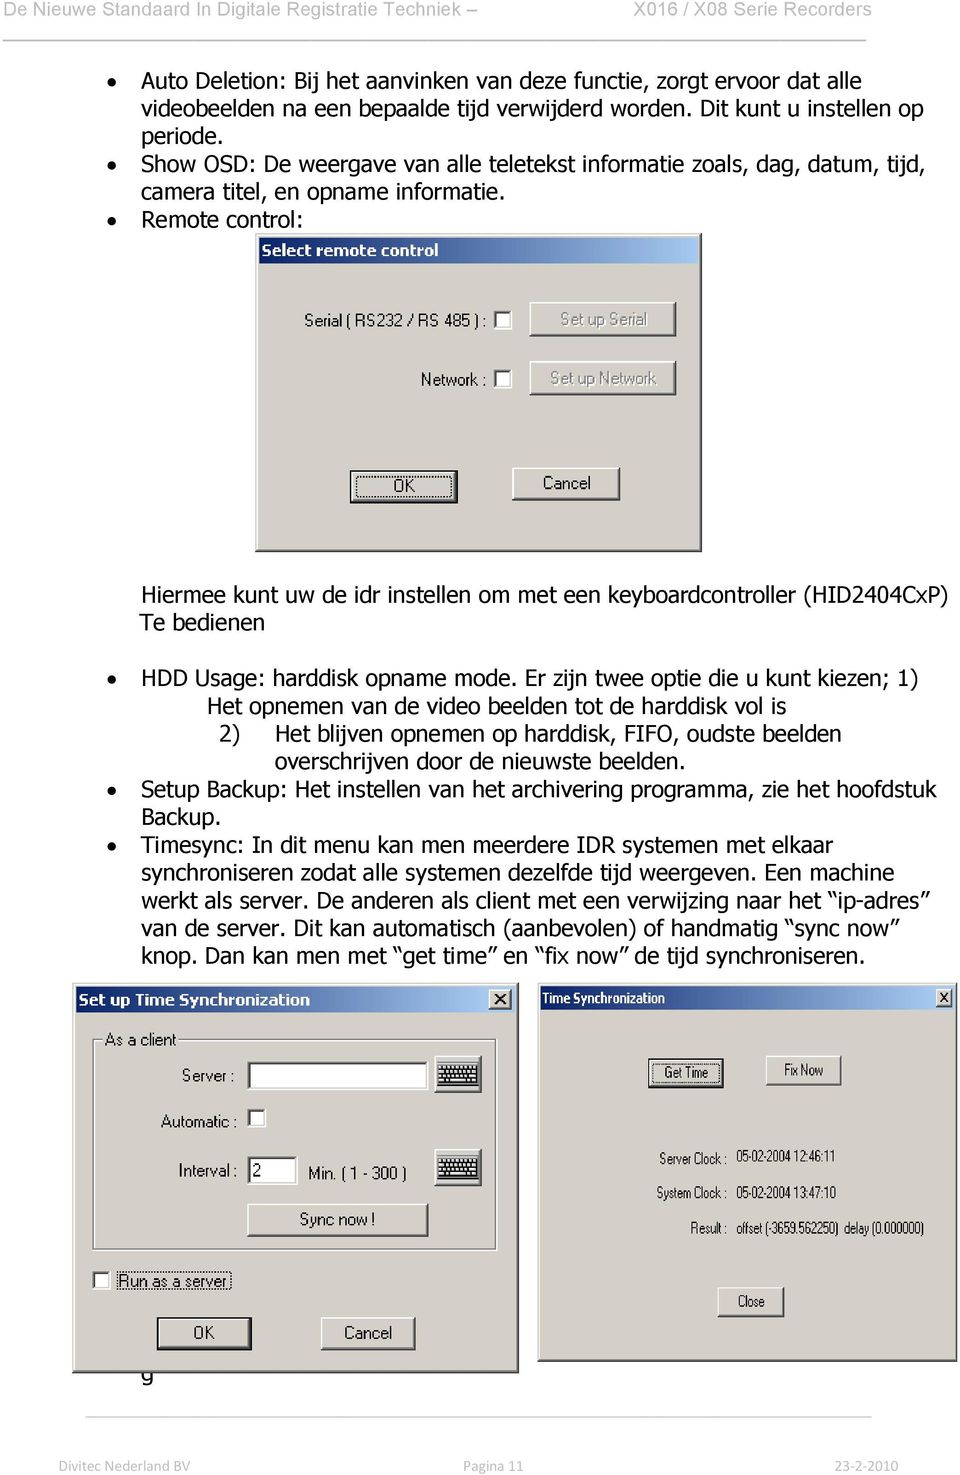 Remote control: Hiermee kunt uw de idr instellen om met een keyboardcontroller (HID2404CxP) Te bedienen HDD Usage: harddisk opname mode.